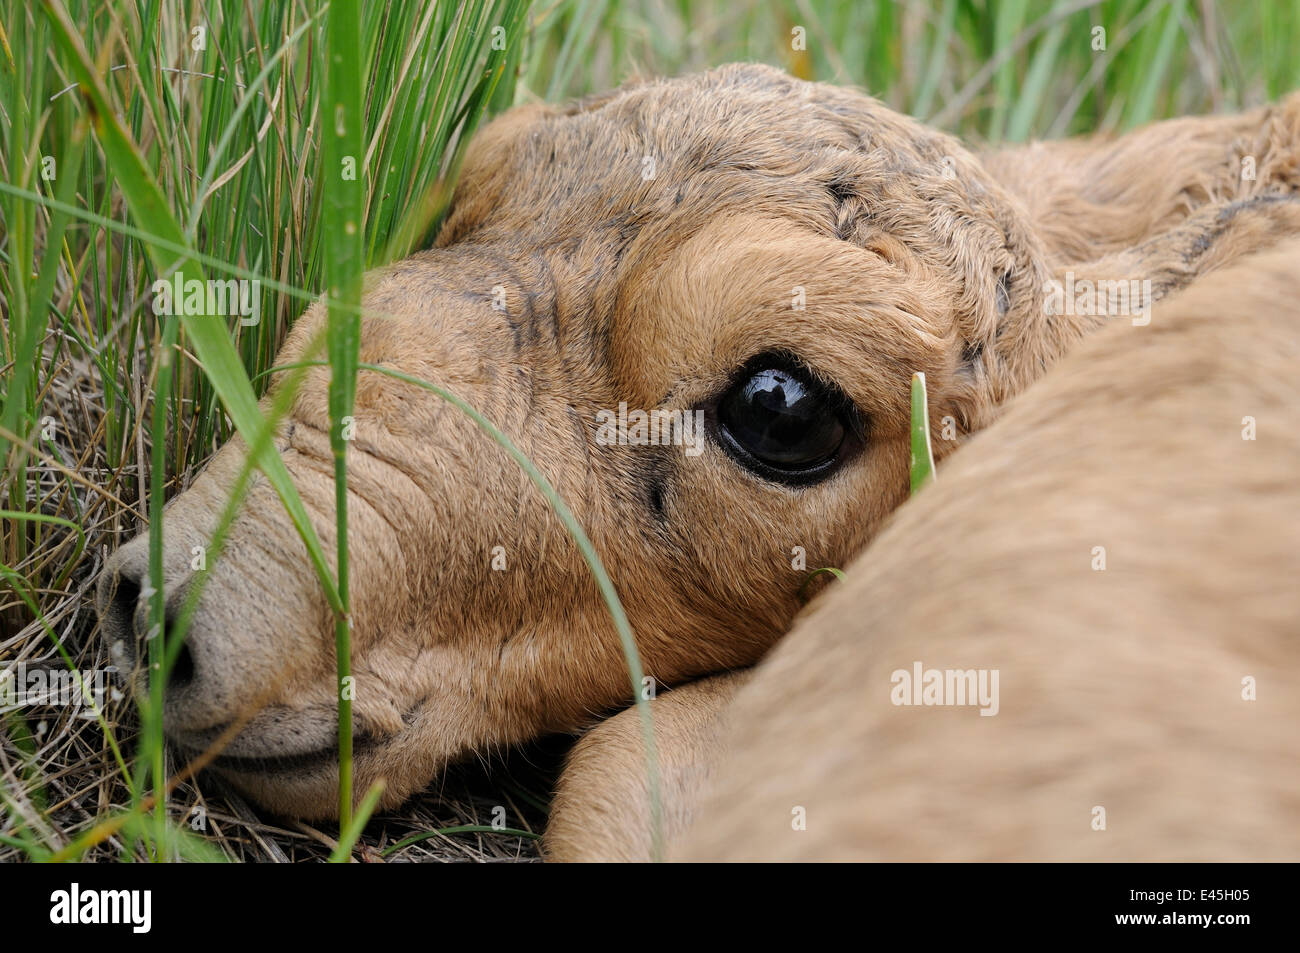 Nouveau-né saïga (Saiga tatarica) couché dans l'herbe, Cherniye zemli (terre noire), Réserve naturelle de Kalmoukie, en Russie, en mai 2009 Banque D'Images